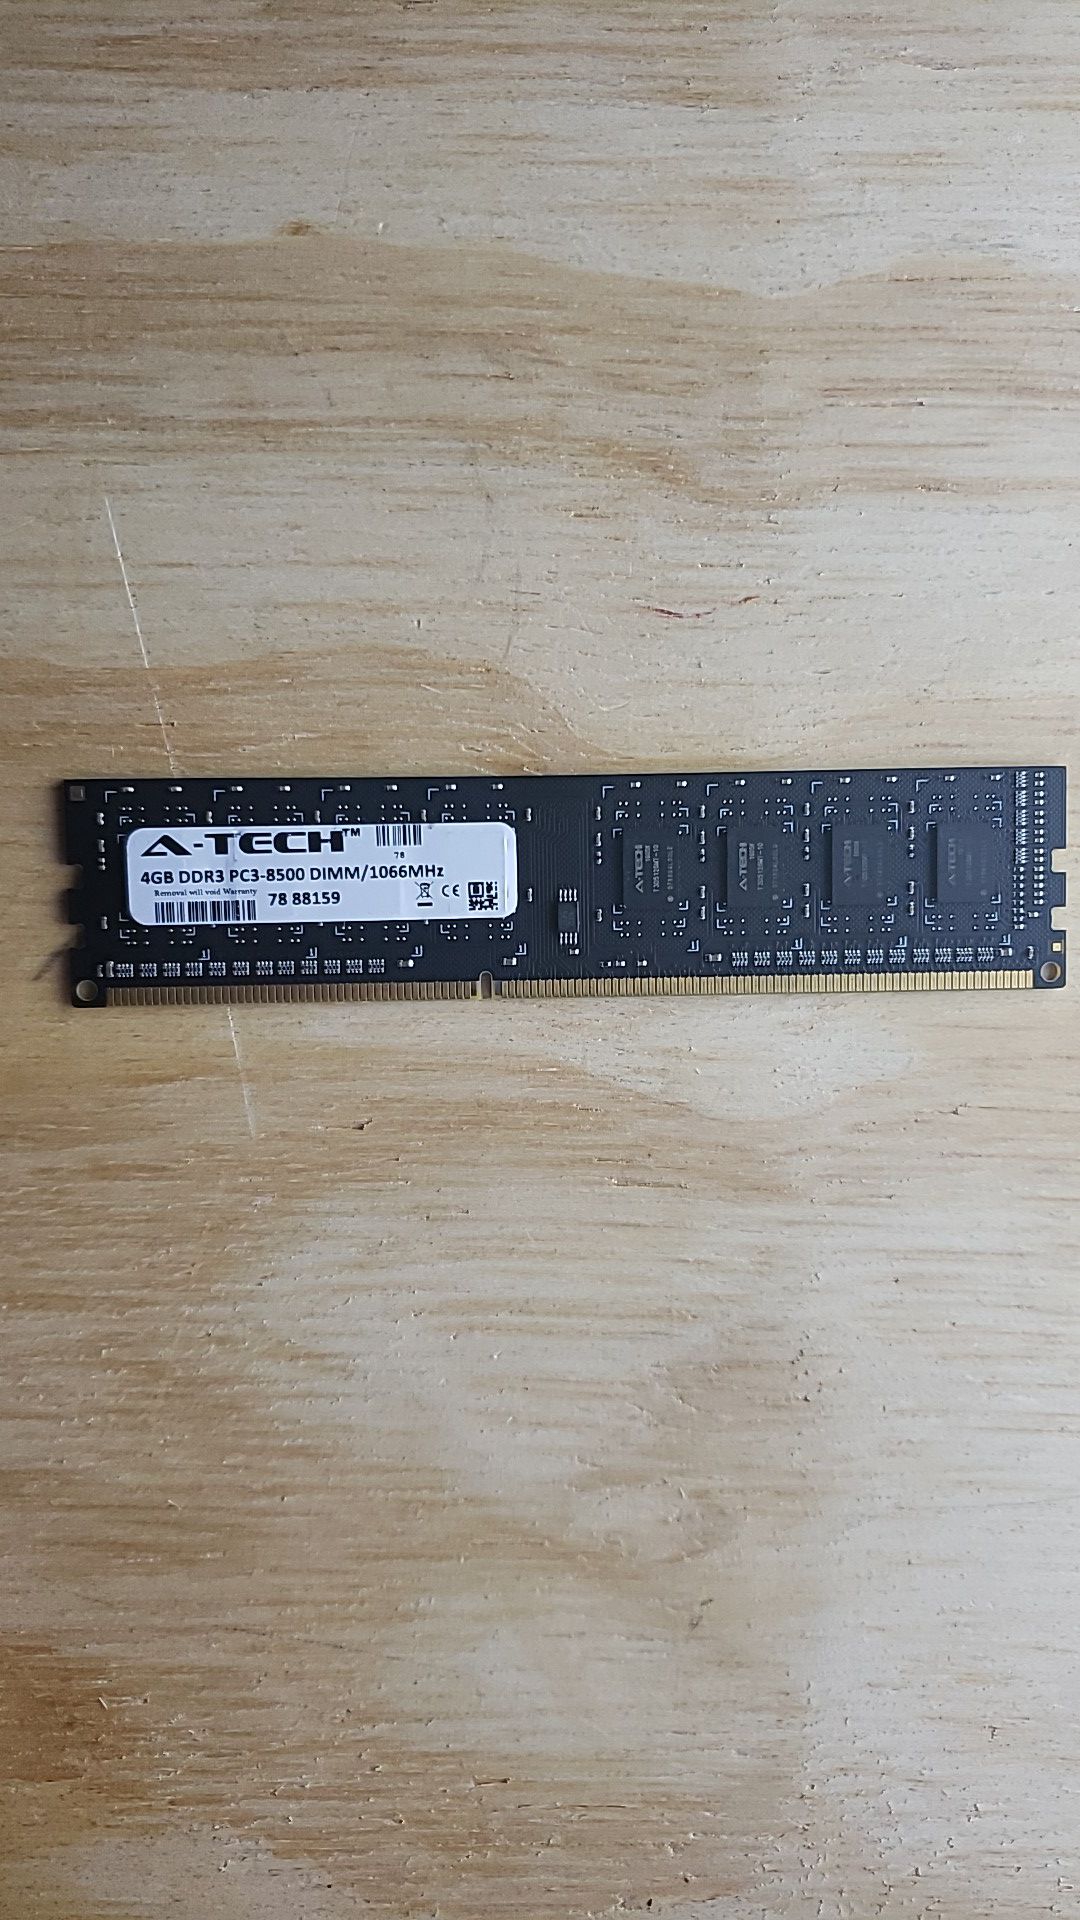 A-Tech Memory PC 4GB DDR3 PC3 8500 DIMM/1066MHz